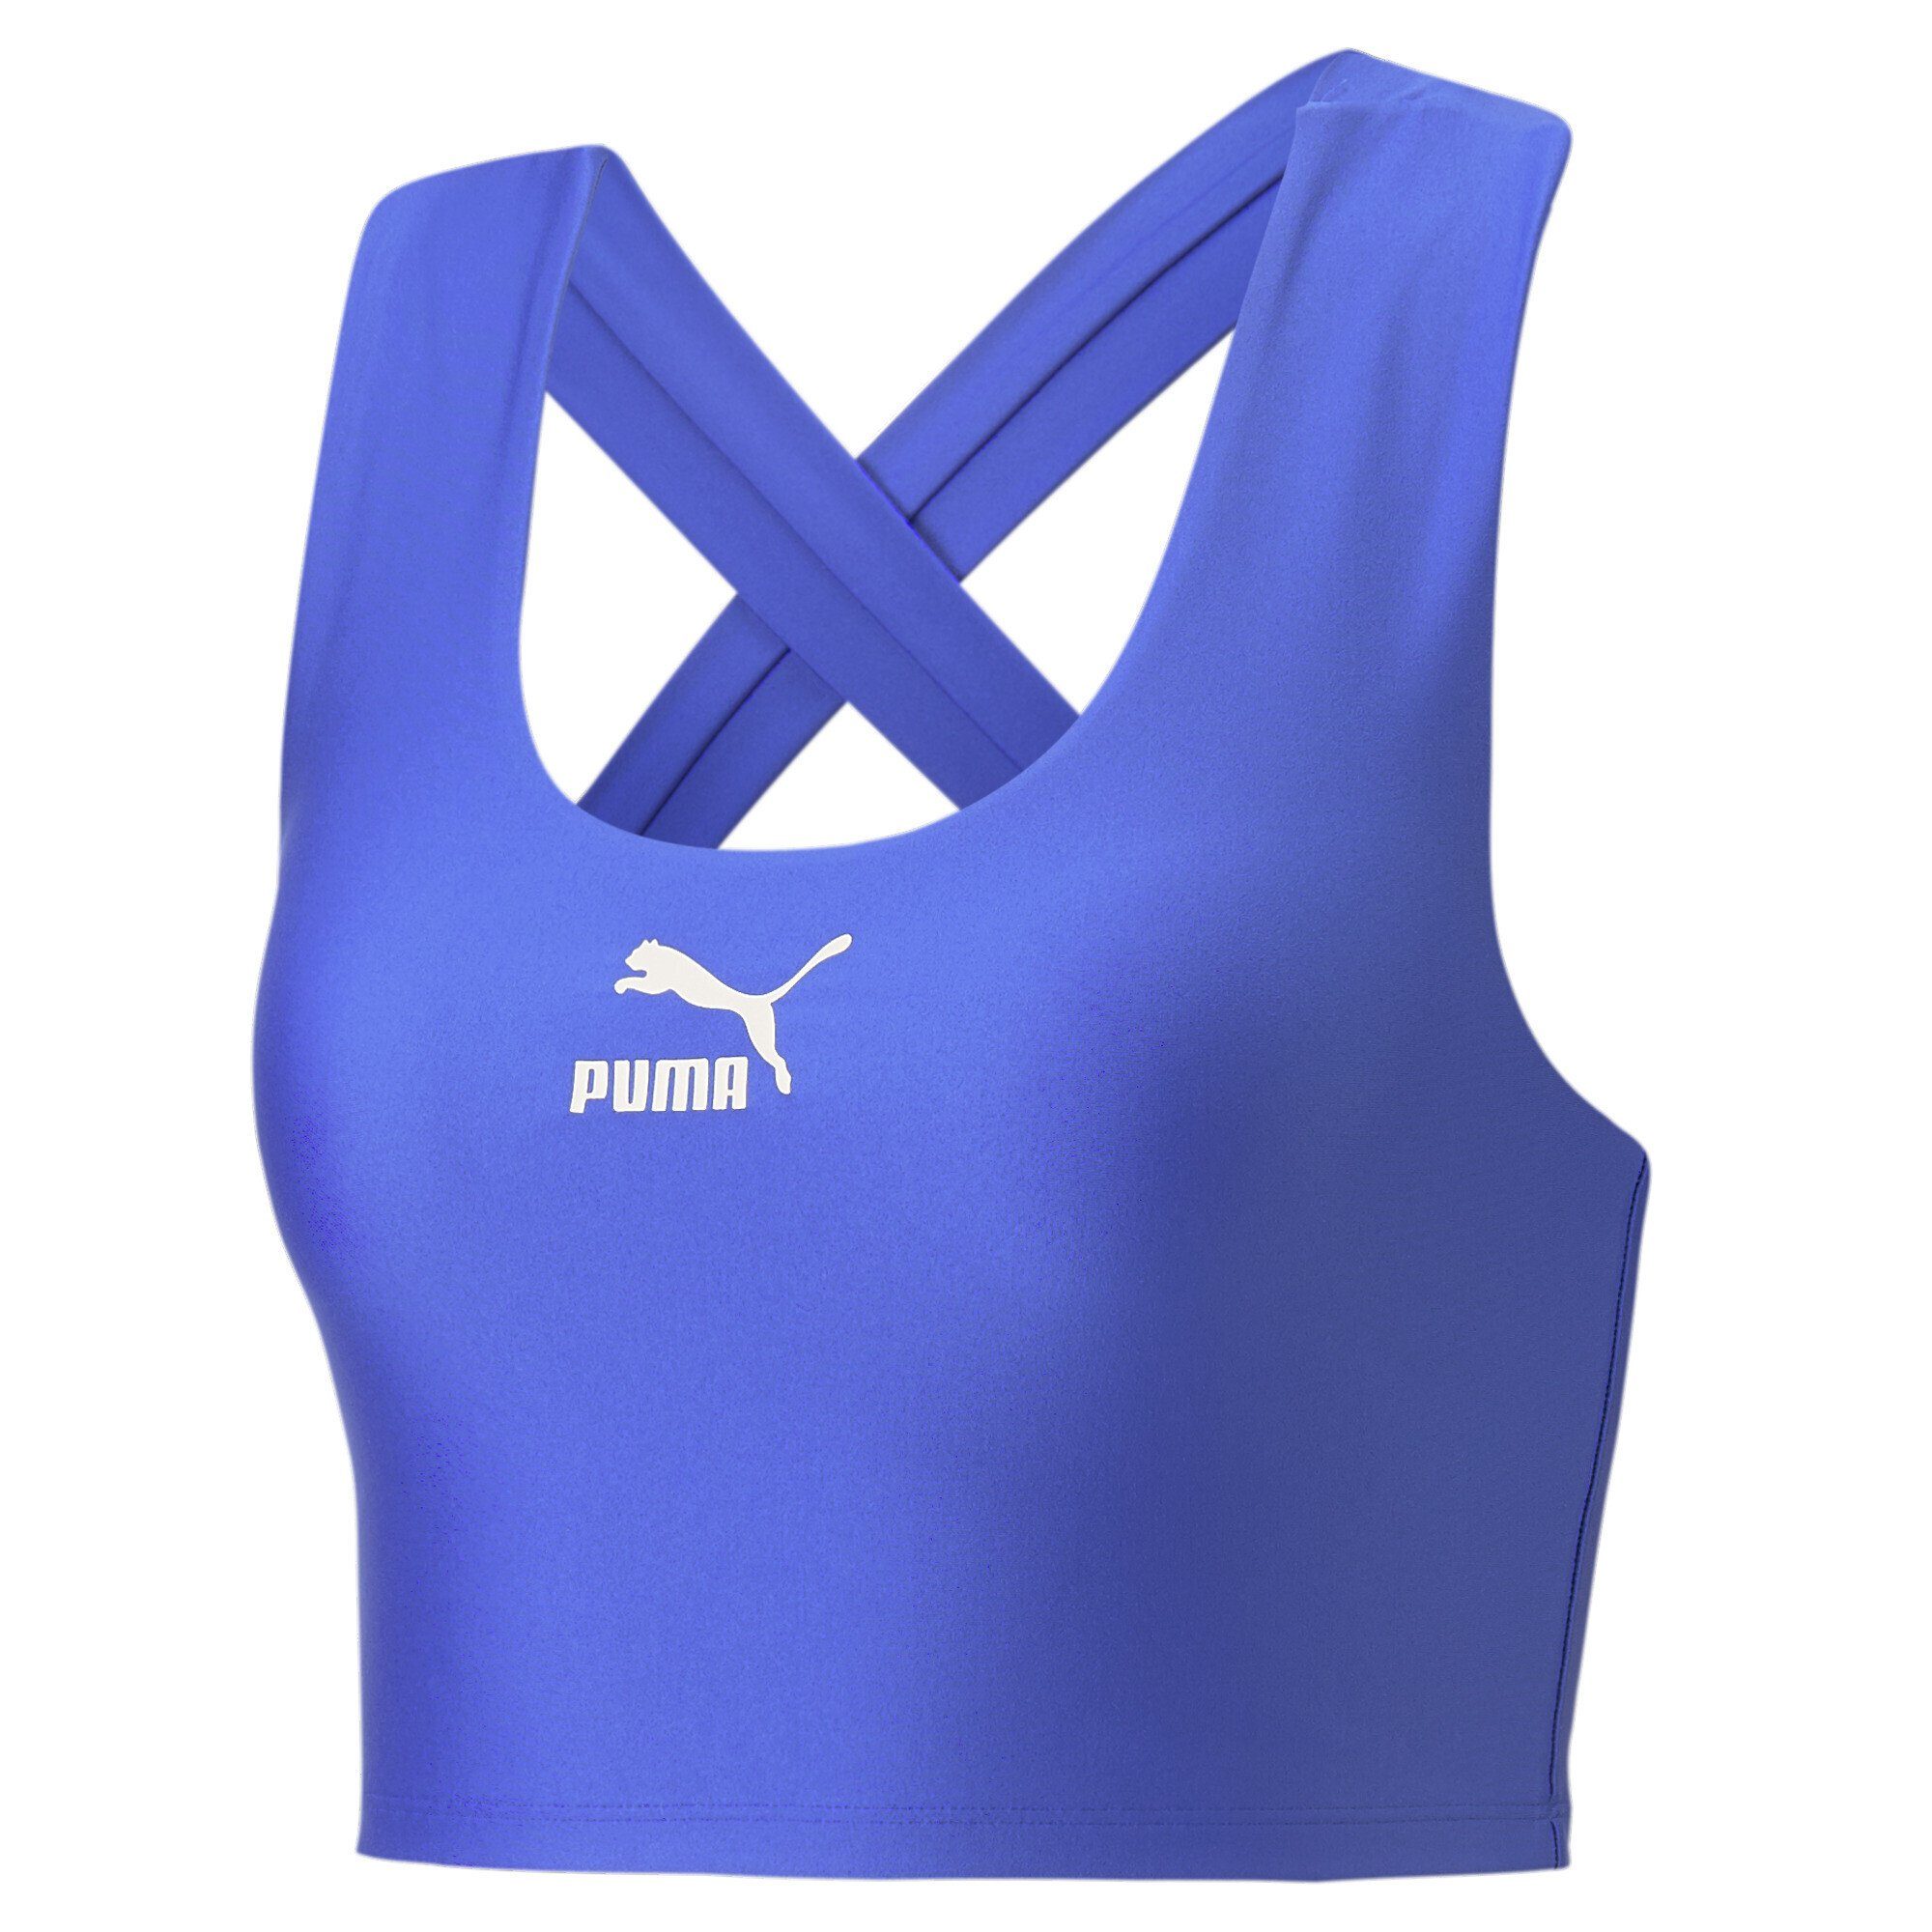 Neues Produkt, Super-Sonderverkauf! PUMA T-Shirt T7 Crop Top Damen